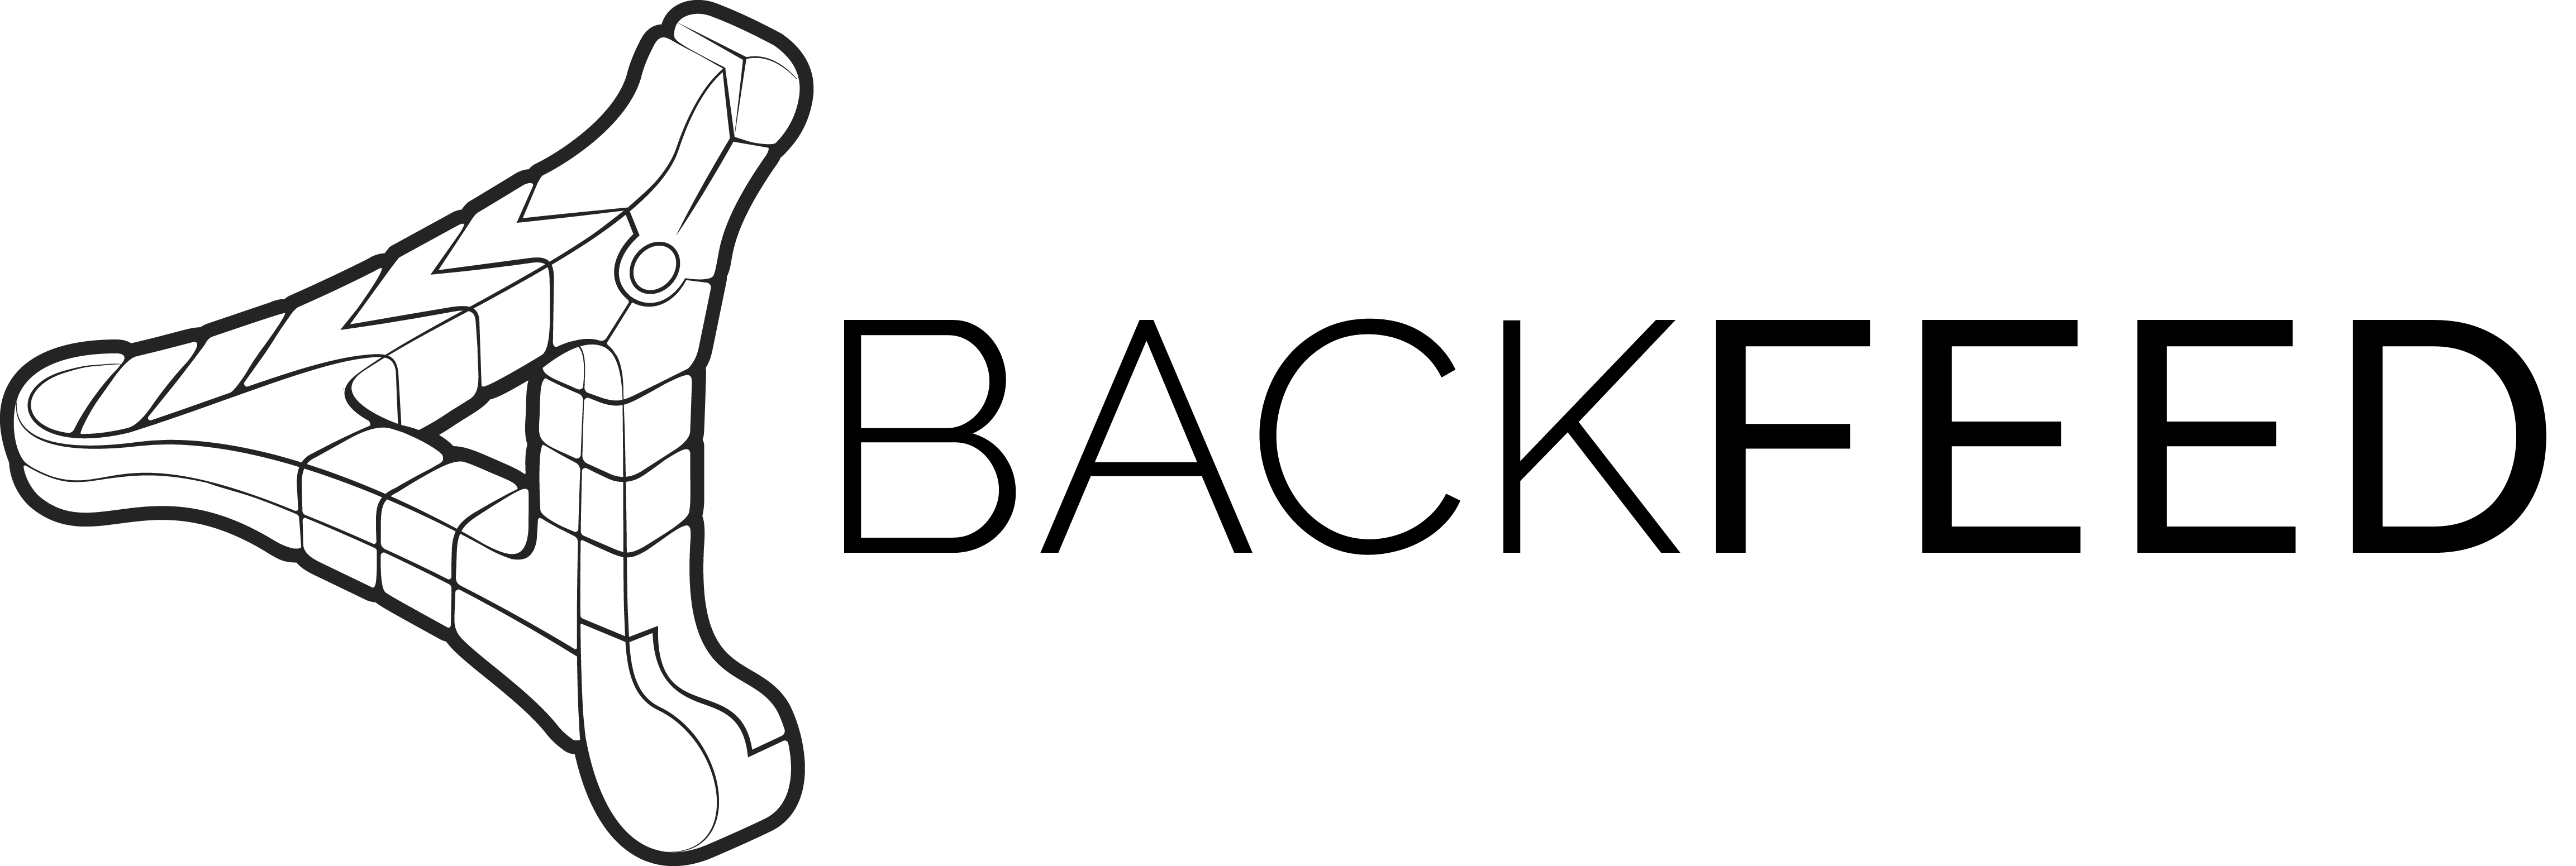 Backfeed logo